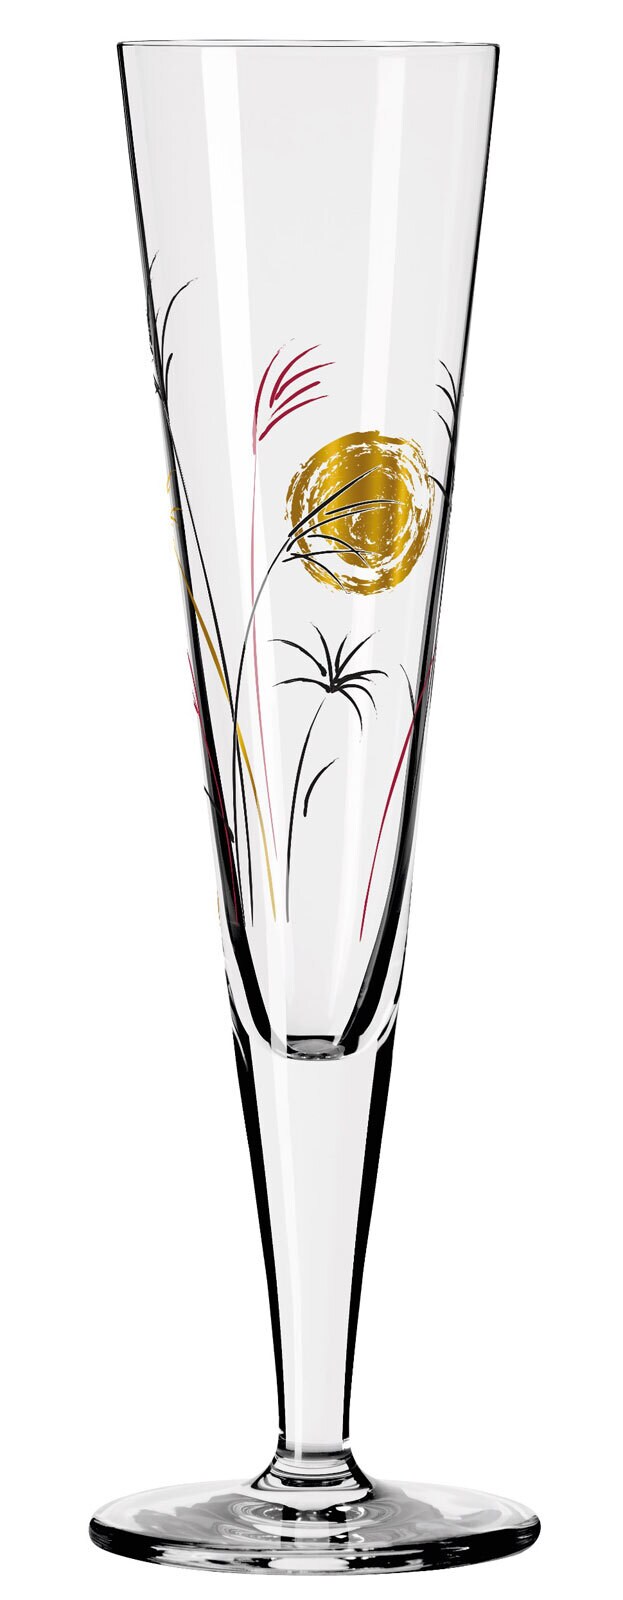 RITZENHOFF Champagnerglas GOLDNACHT I R. HOSHINO